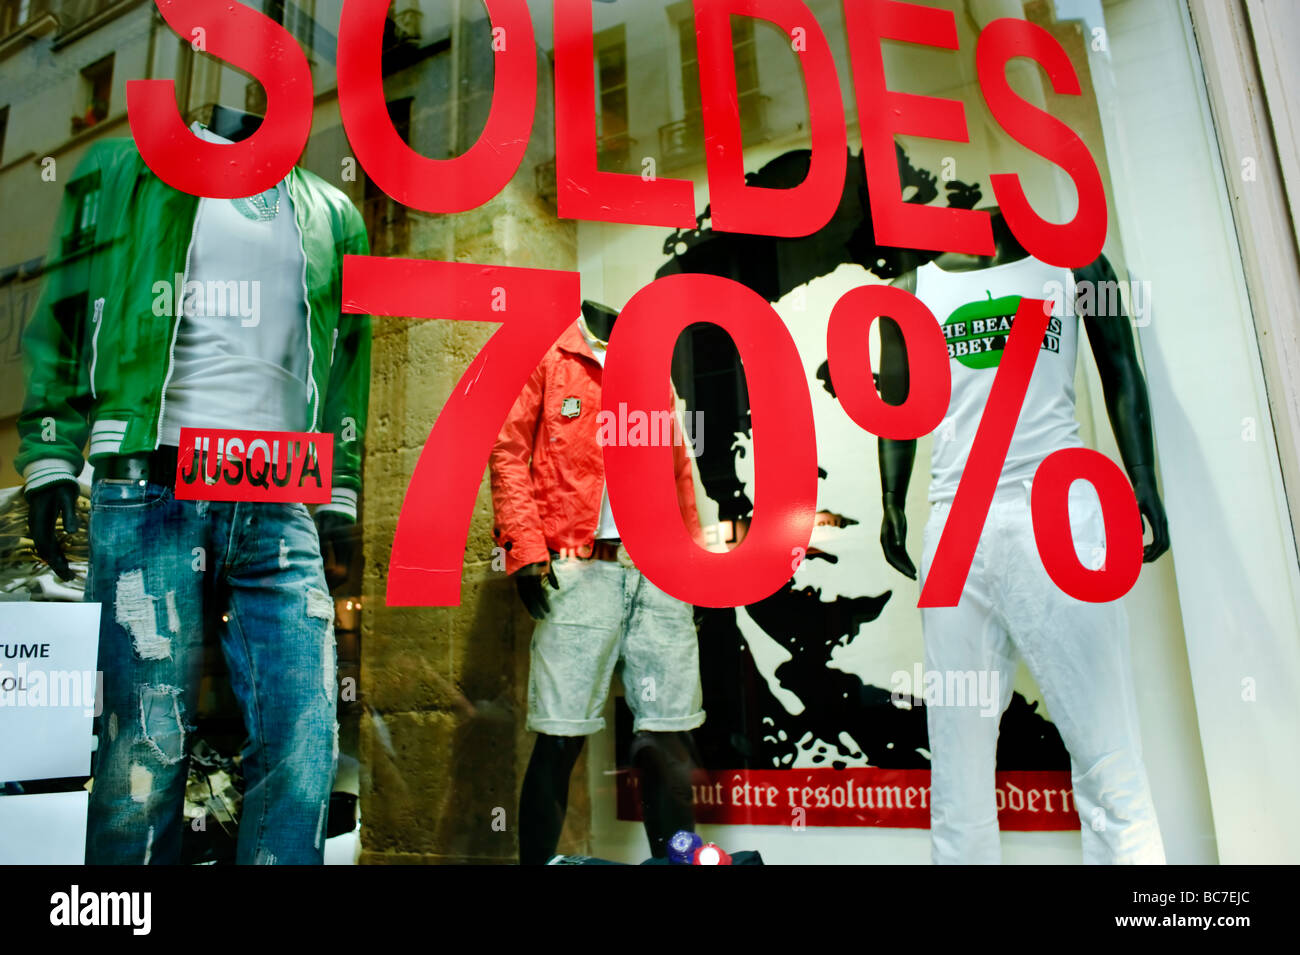 louis vuitton archivos - Trendy Shop  Tienda de ropa moda y accesorios  online